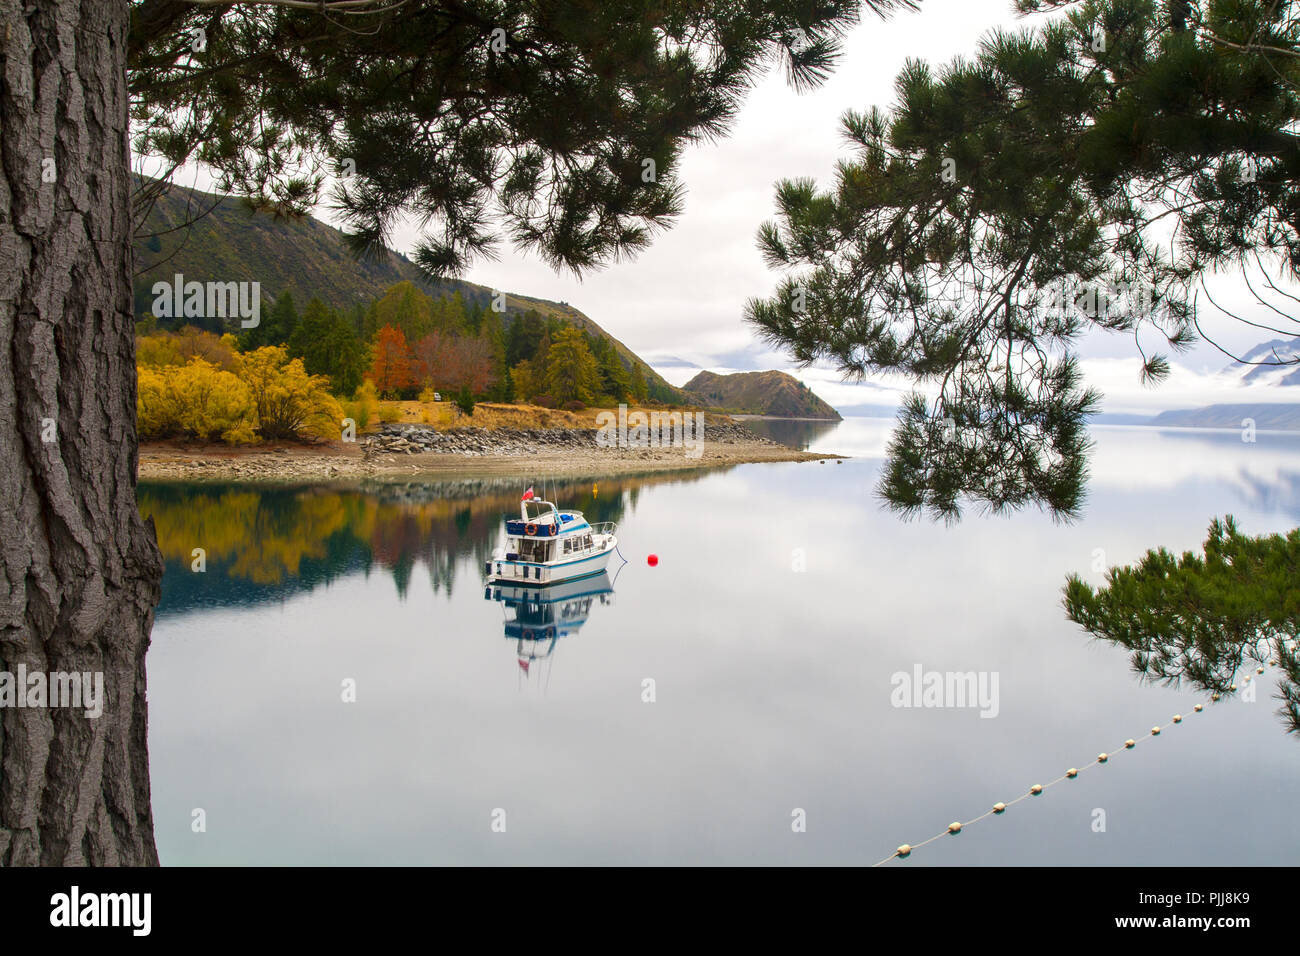 Ruhigen Herbst Landschaft mit einsamen Urlaub Boot auf dem ruhigen Wasser des unberührten Bergsee, Spiegel Wasser Reflexion, Lake Hawea, Neuseeland Stockfoto